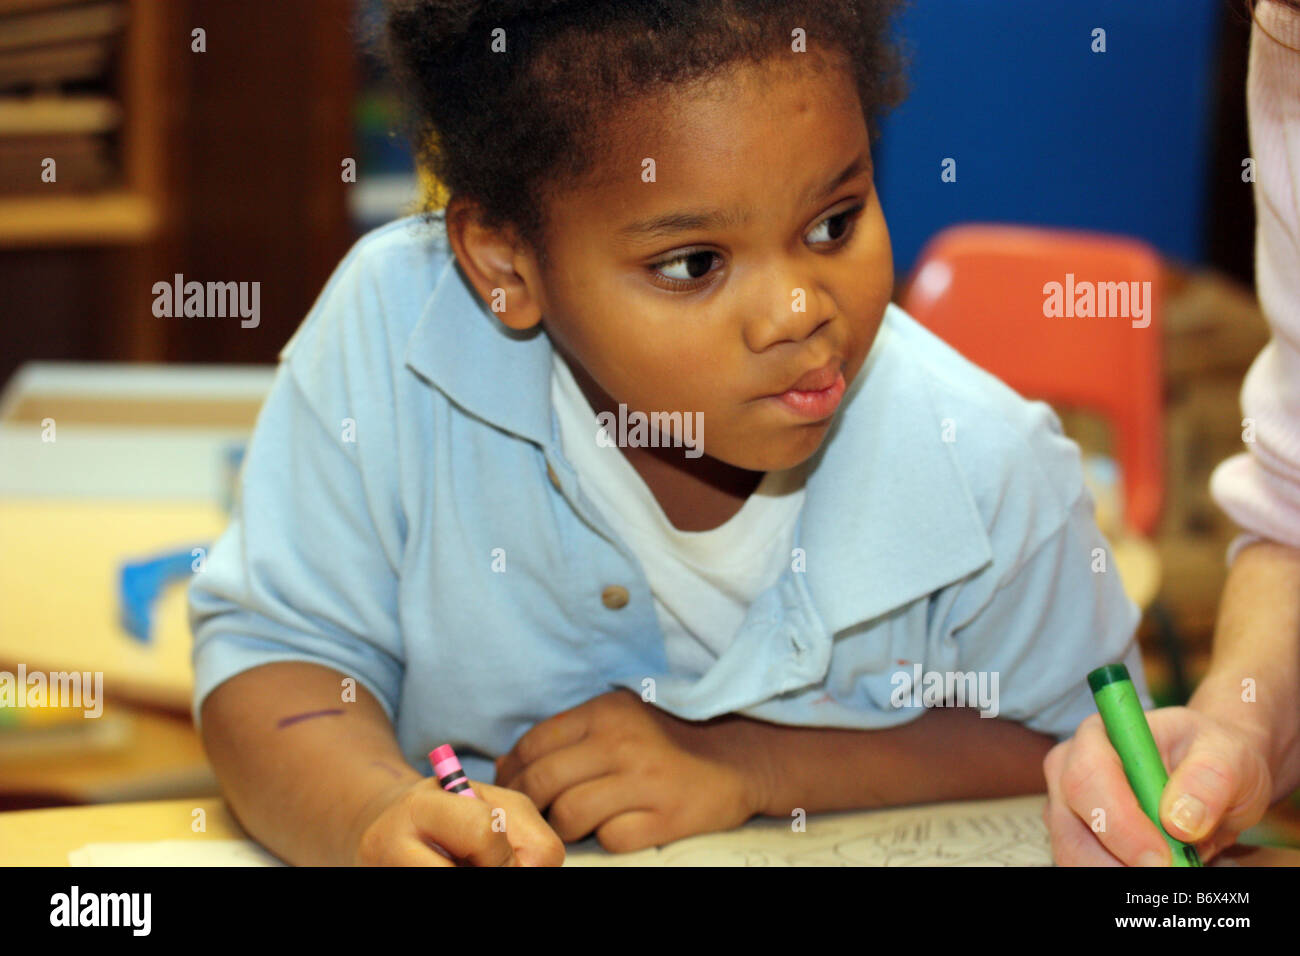 Jóvenes Africanos American Girl colorear imágenes con lápices de colores sobre un escritorio Foto de stock